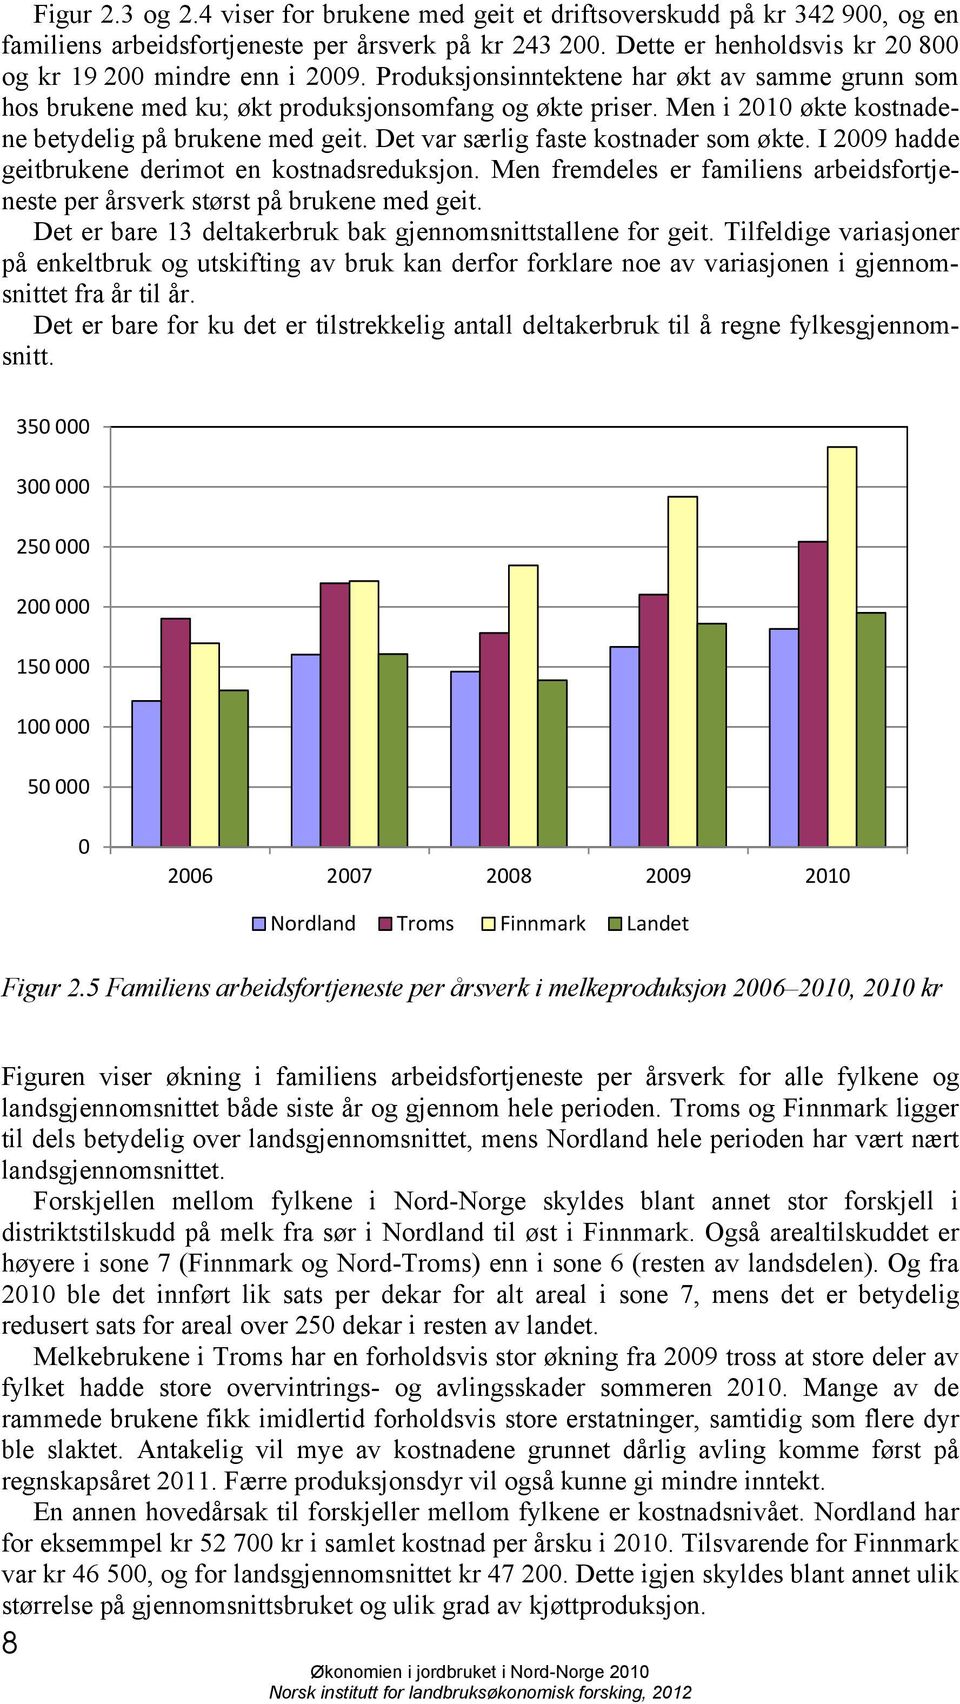 Men i 2010 økte kostnadene betydelig på brukene med geit. Det var særlig faste kostnader som økte. I 2009 hadde geitbrukene derimot en kostnadsreduksjon.